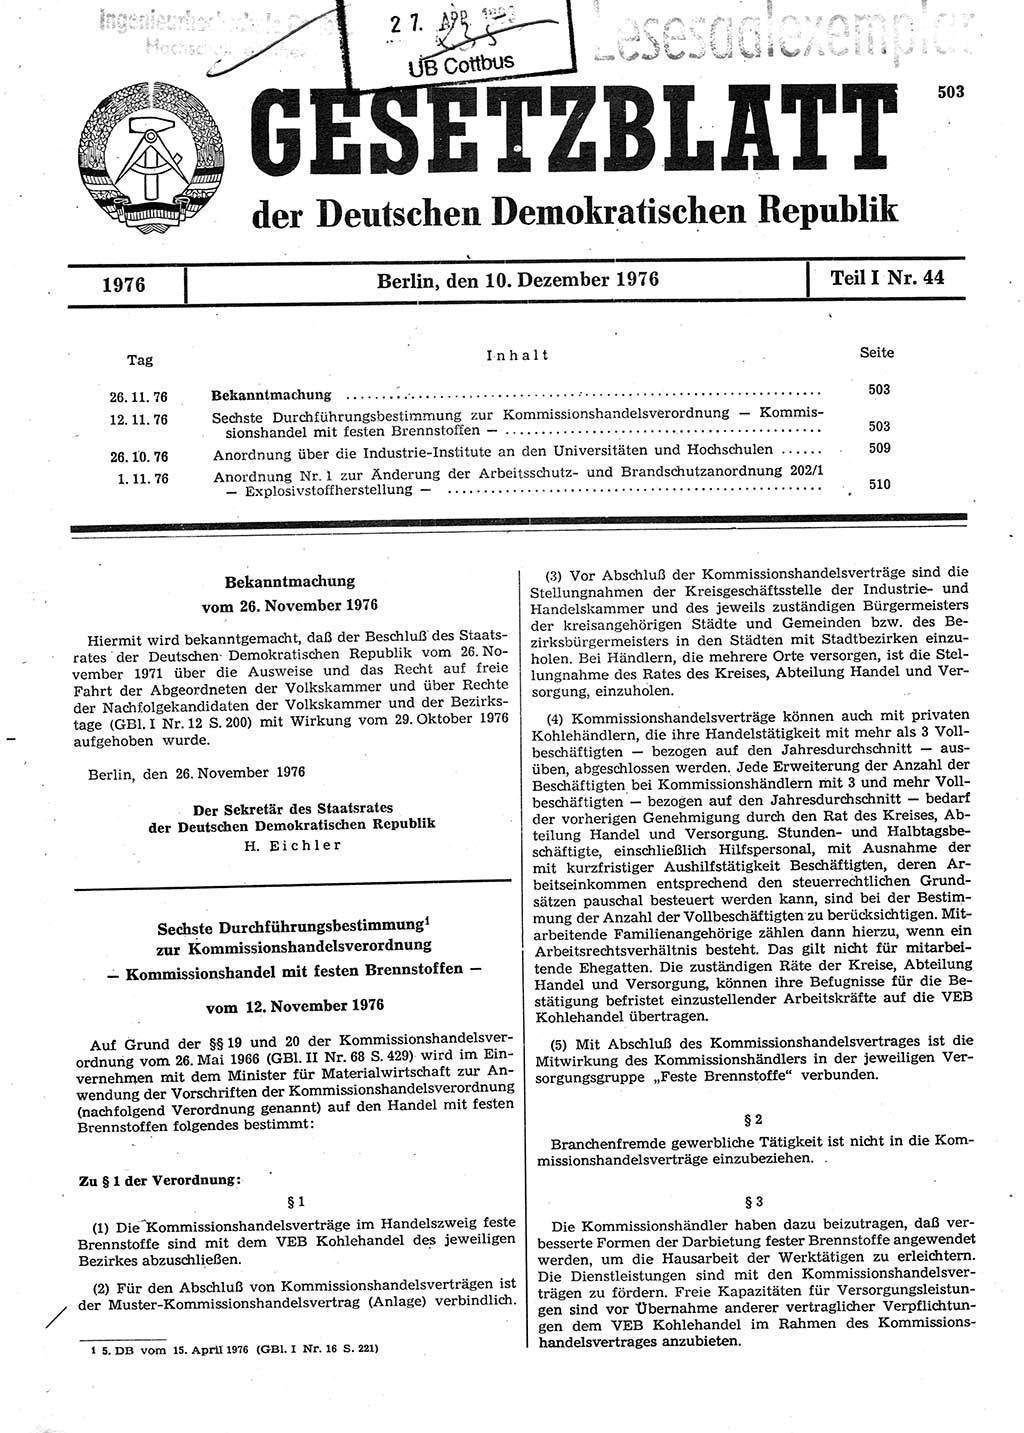 Gesetzblatt (GBl.) der Deutschen Demokratischen Republik (DDR) Teil Ⅰ 1976, Seite 503 (GBl. DDR Ⅰ 1976, S. 503)